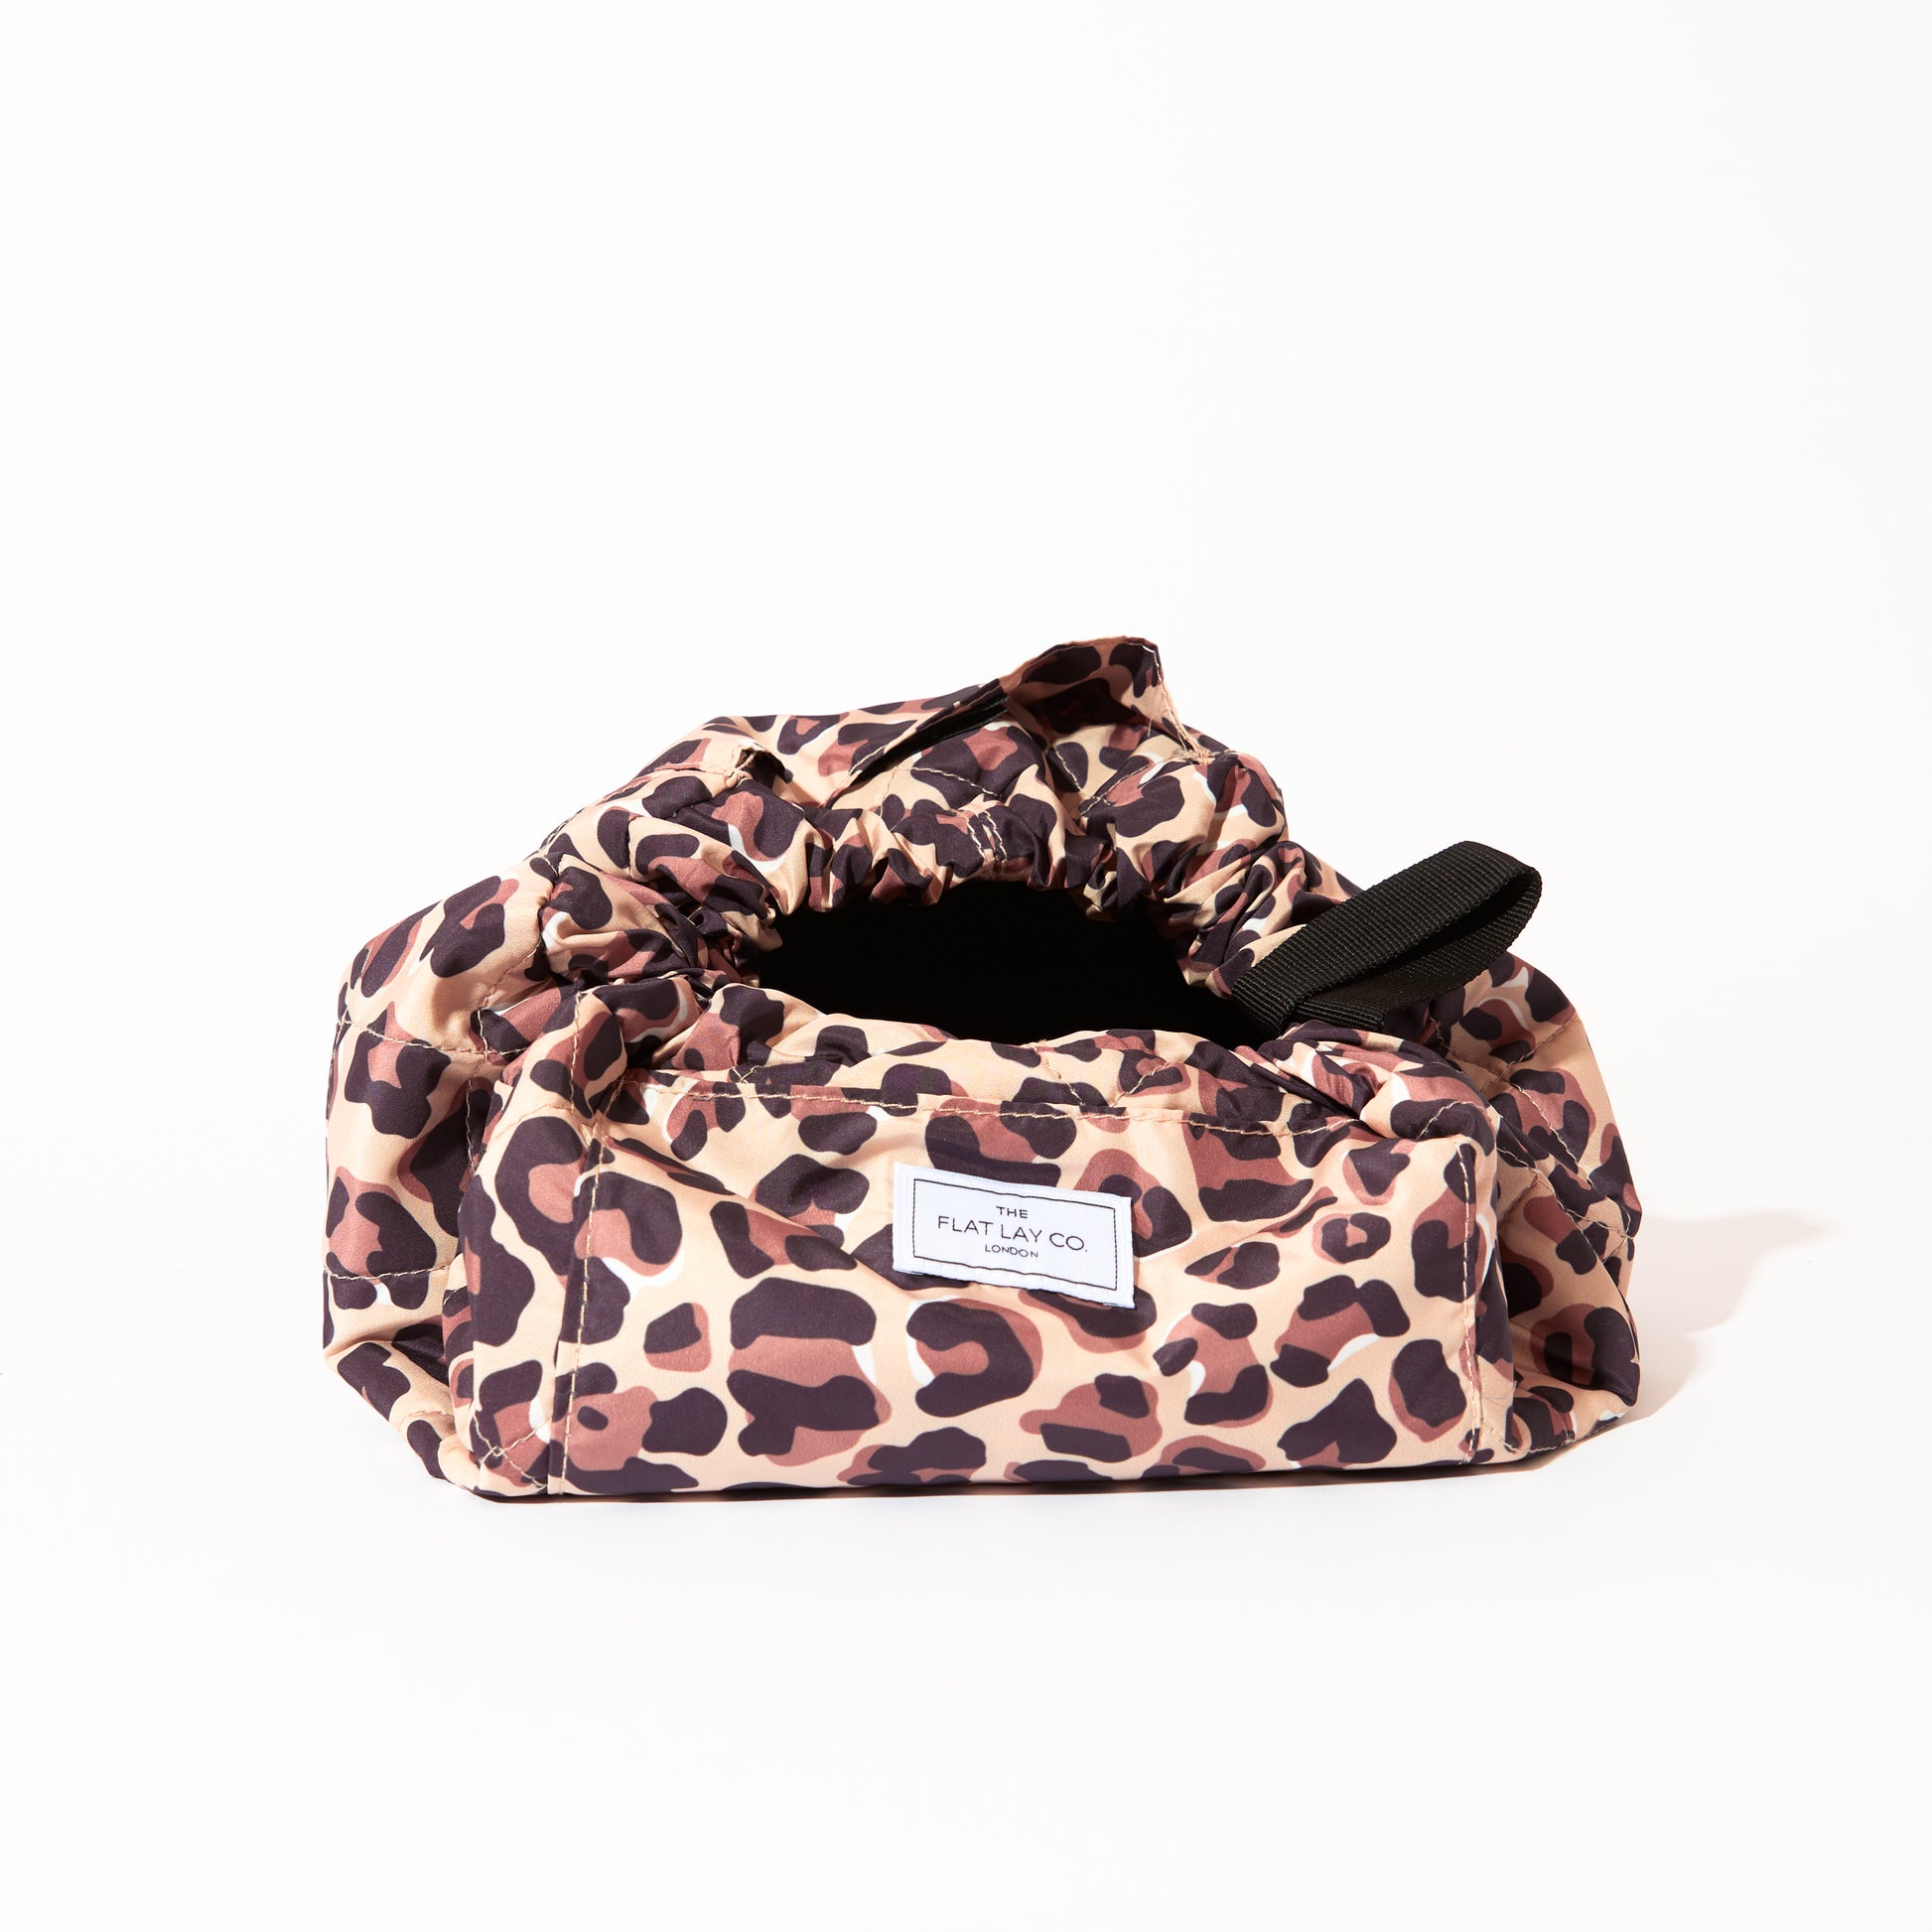 Mini Open Flat Makeup Bag Leopard